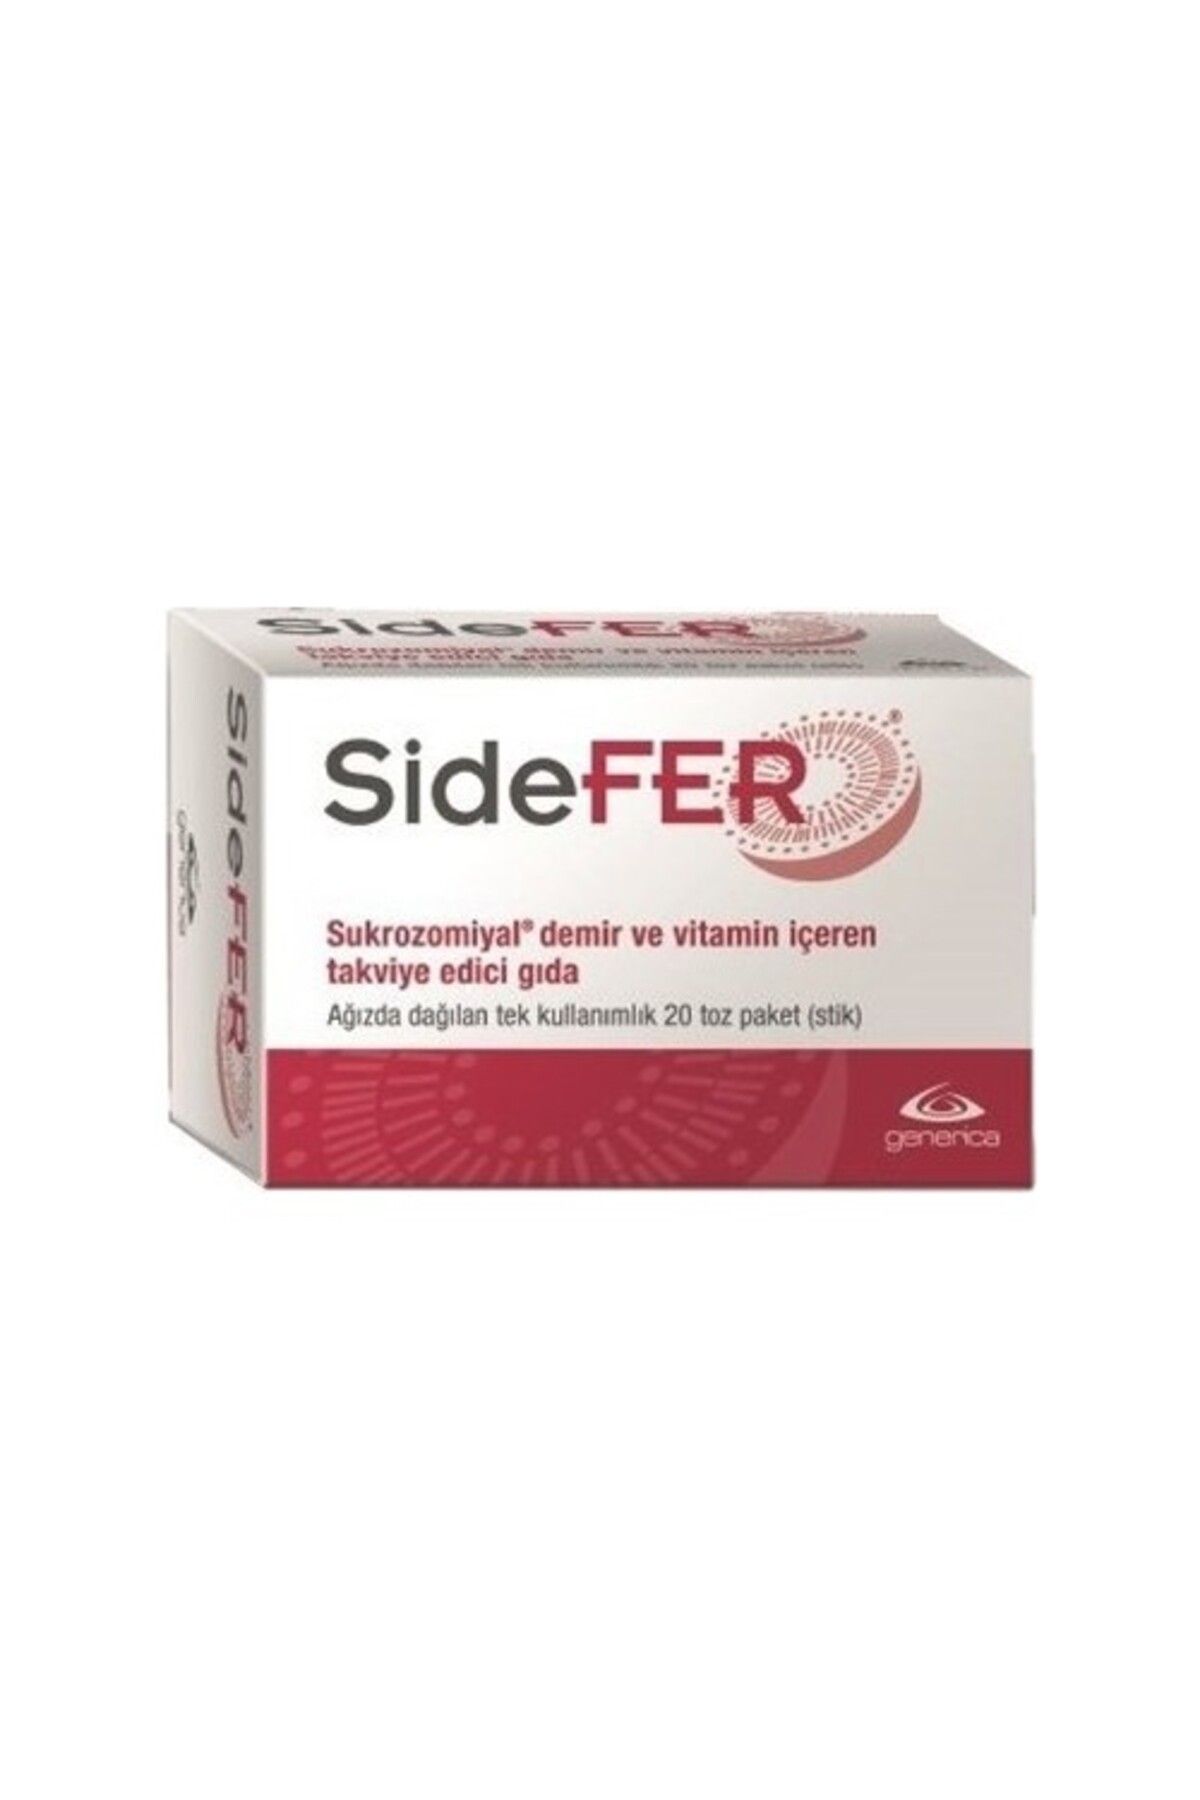 Sidefer Generica Sidefer 20 Toz Paket